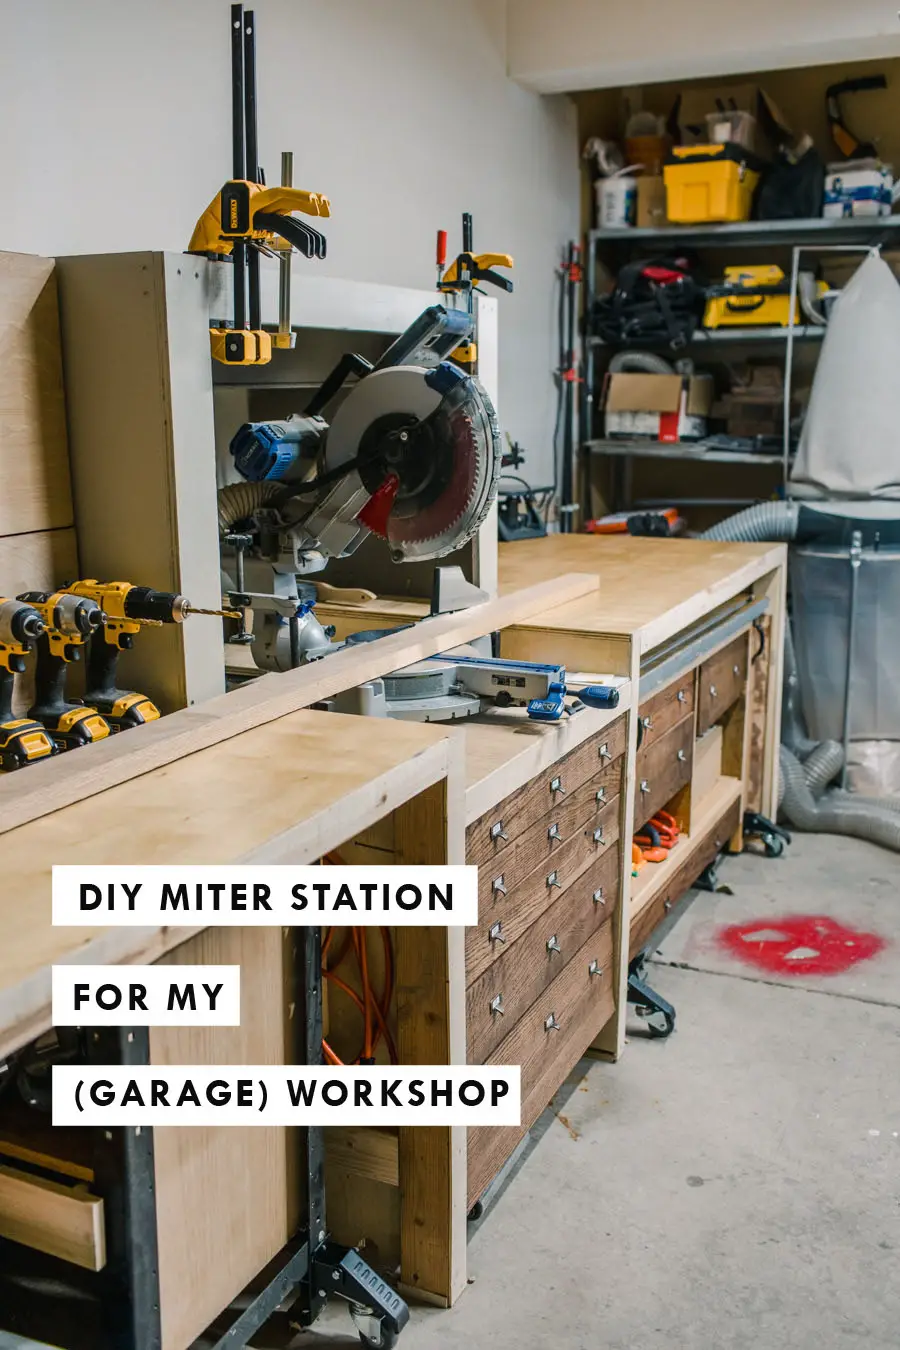 DIY Miter Station for my Garage Workshop